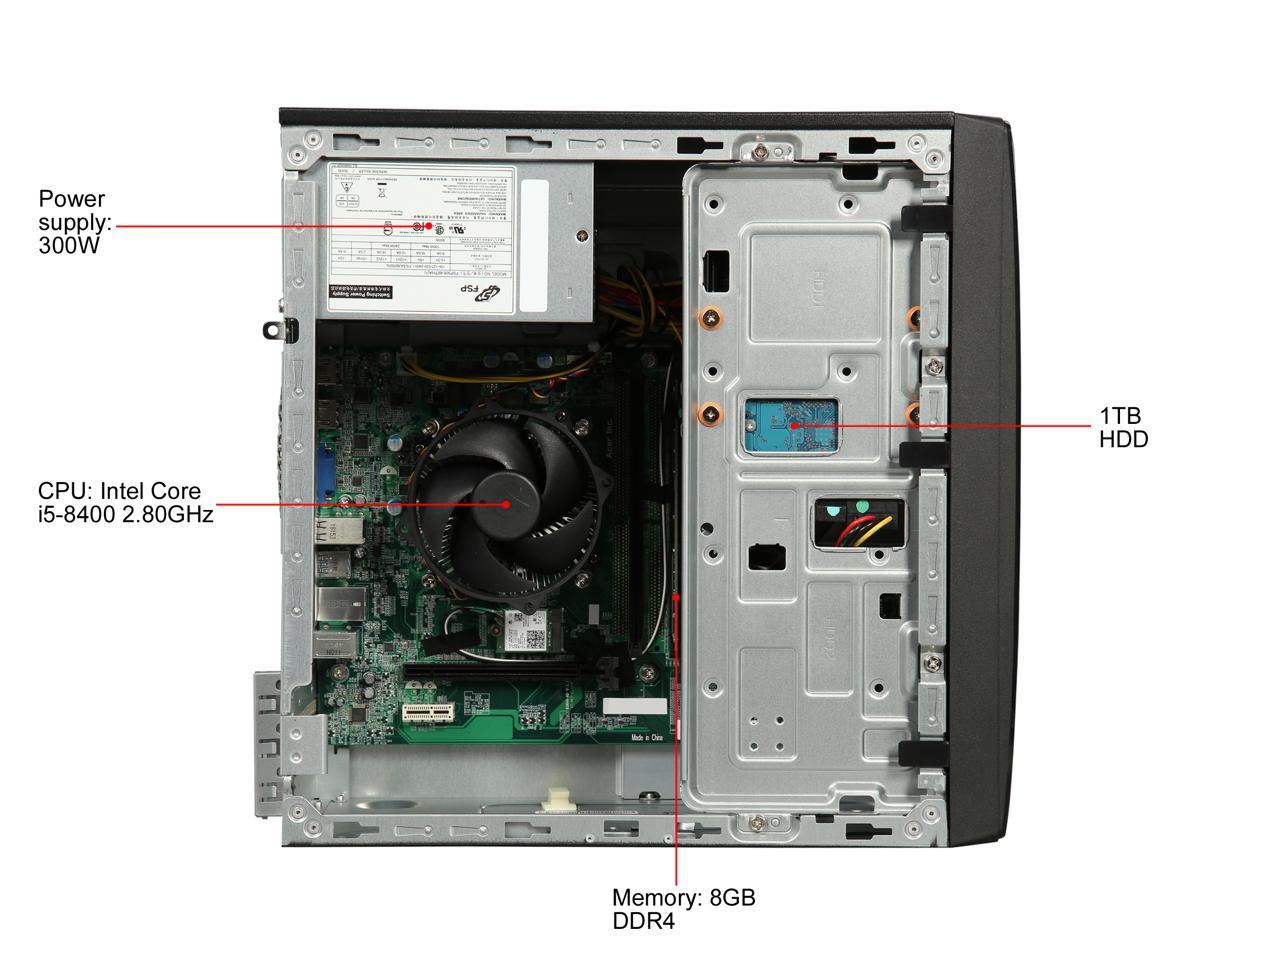 Refurbished: Acer Grade A Desktop Computer Aspire TC TC-865-DH11 Intel